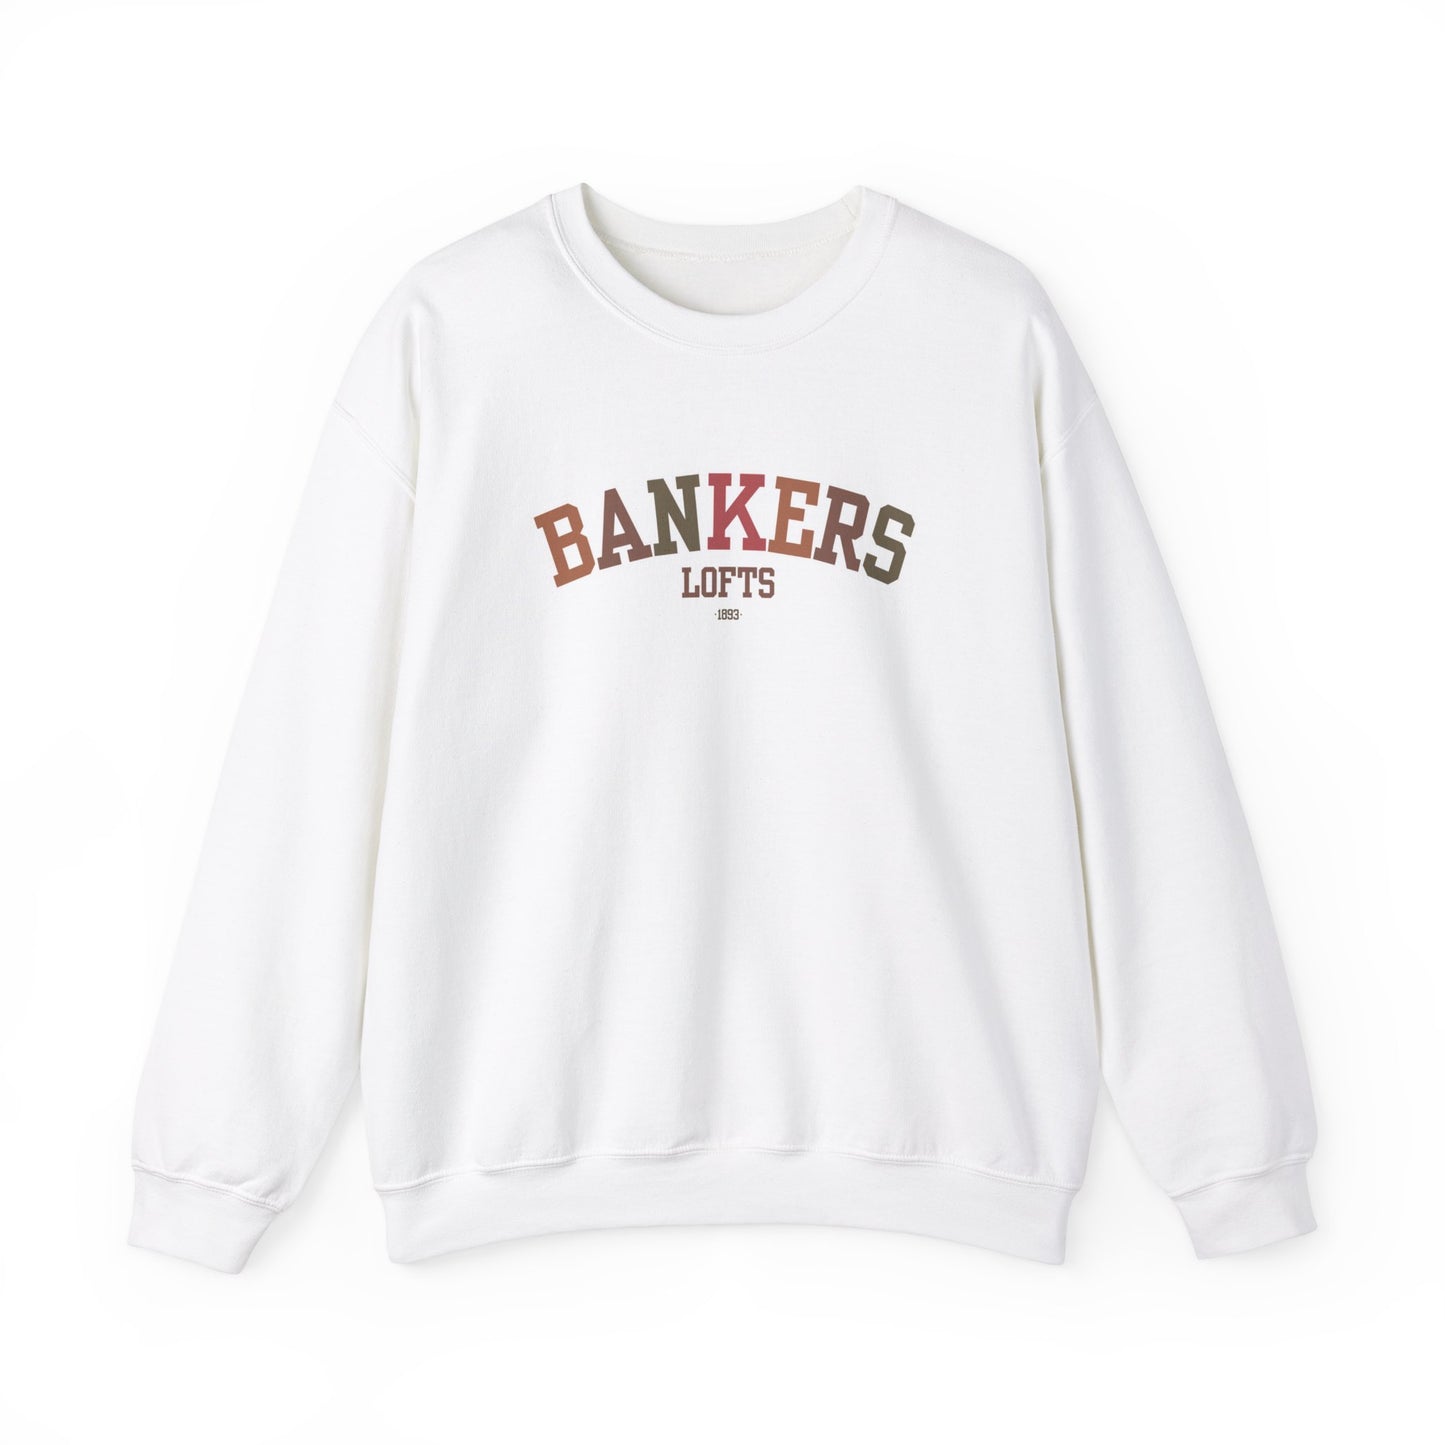 Bankers Collegiate Sweatshirt